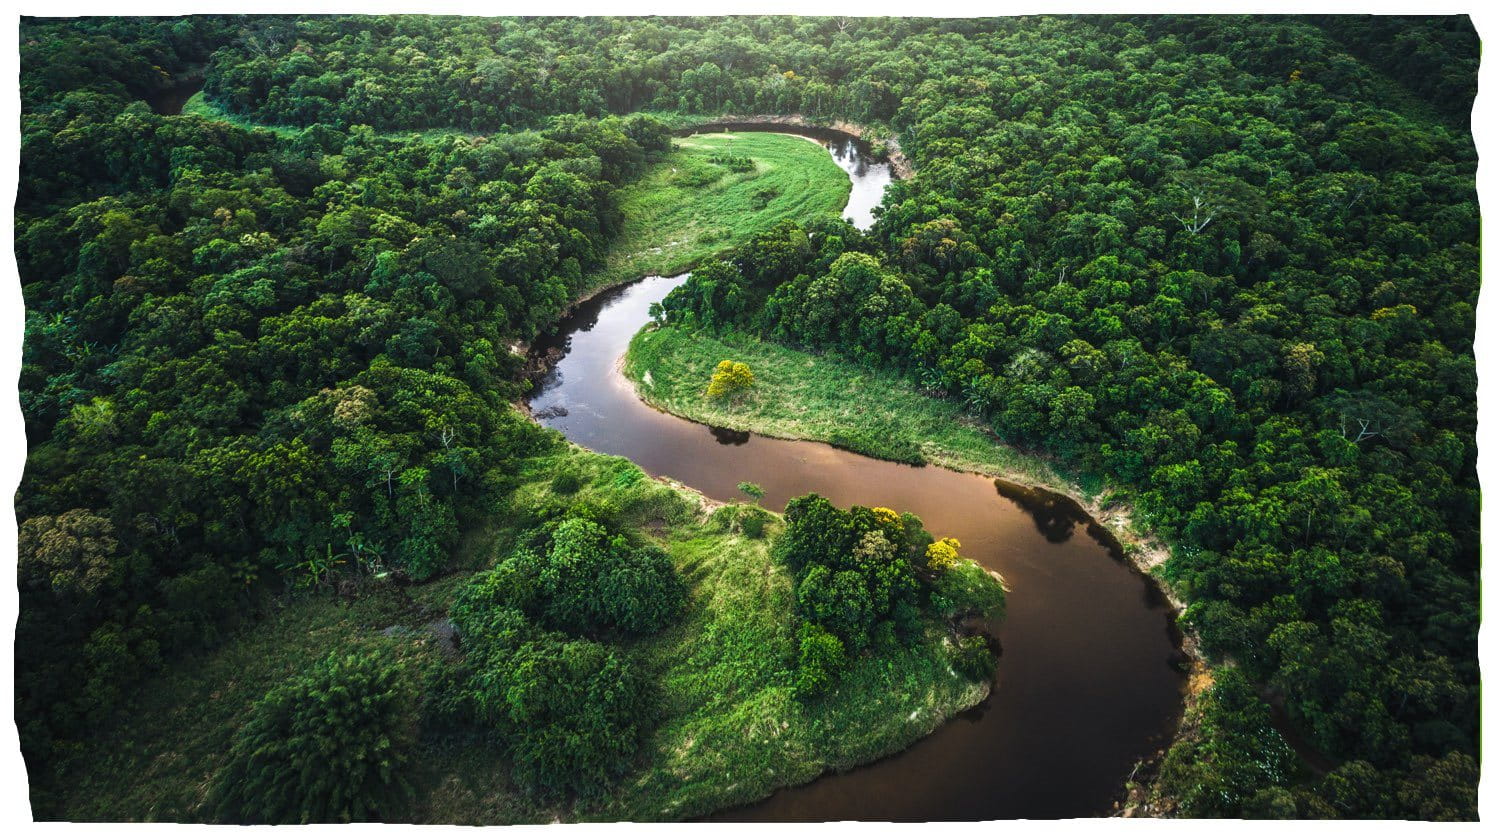 Une rivière serpentant à travers une forêt luxuriante.